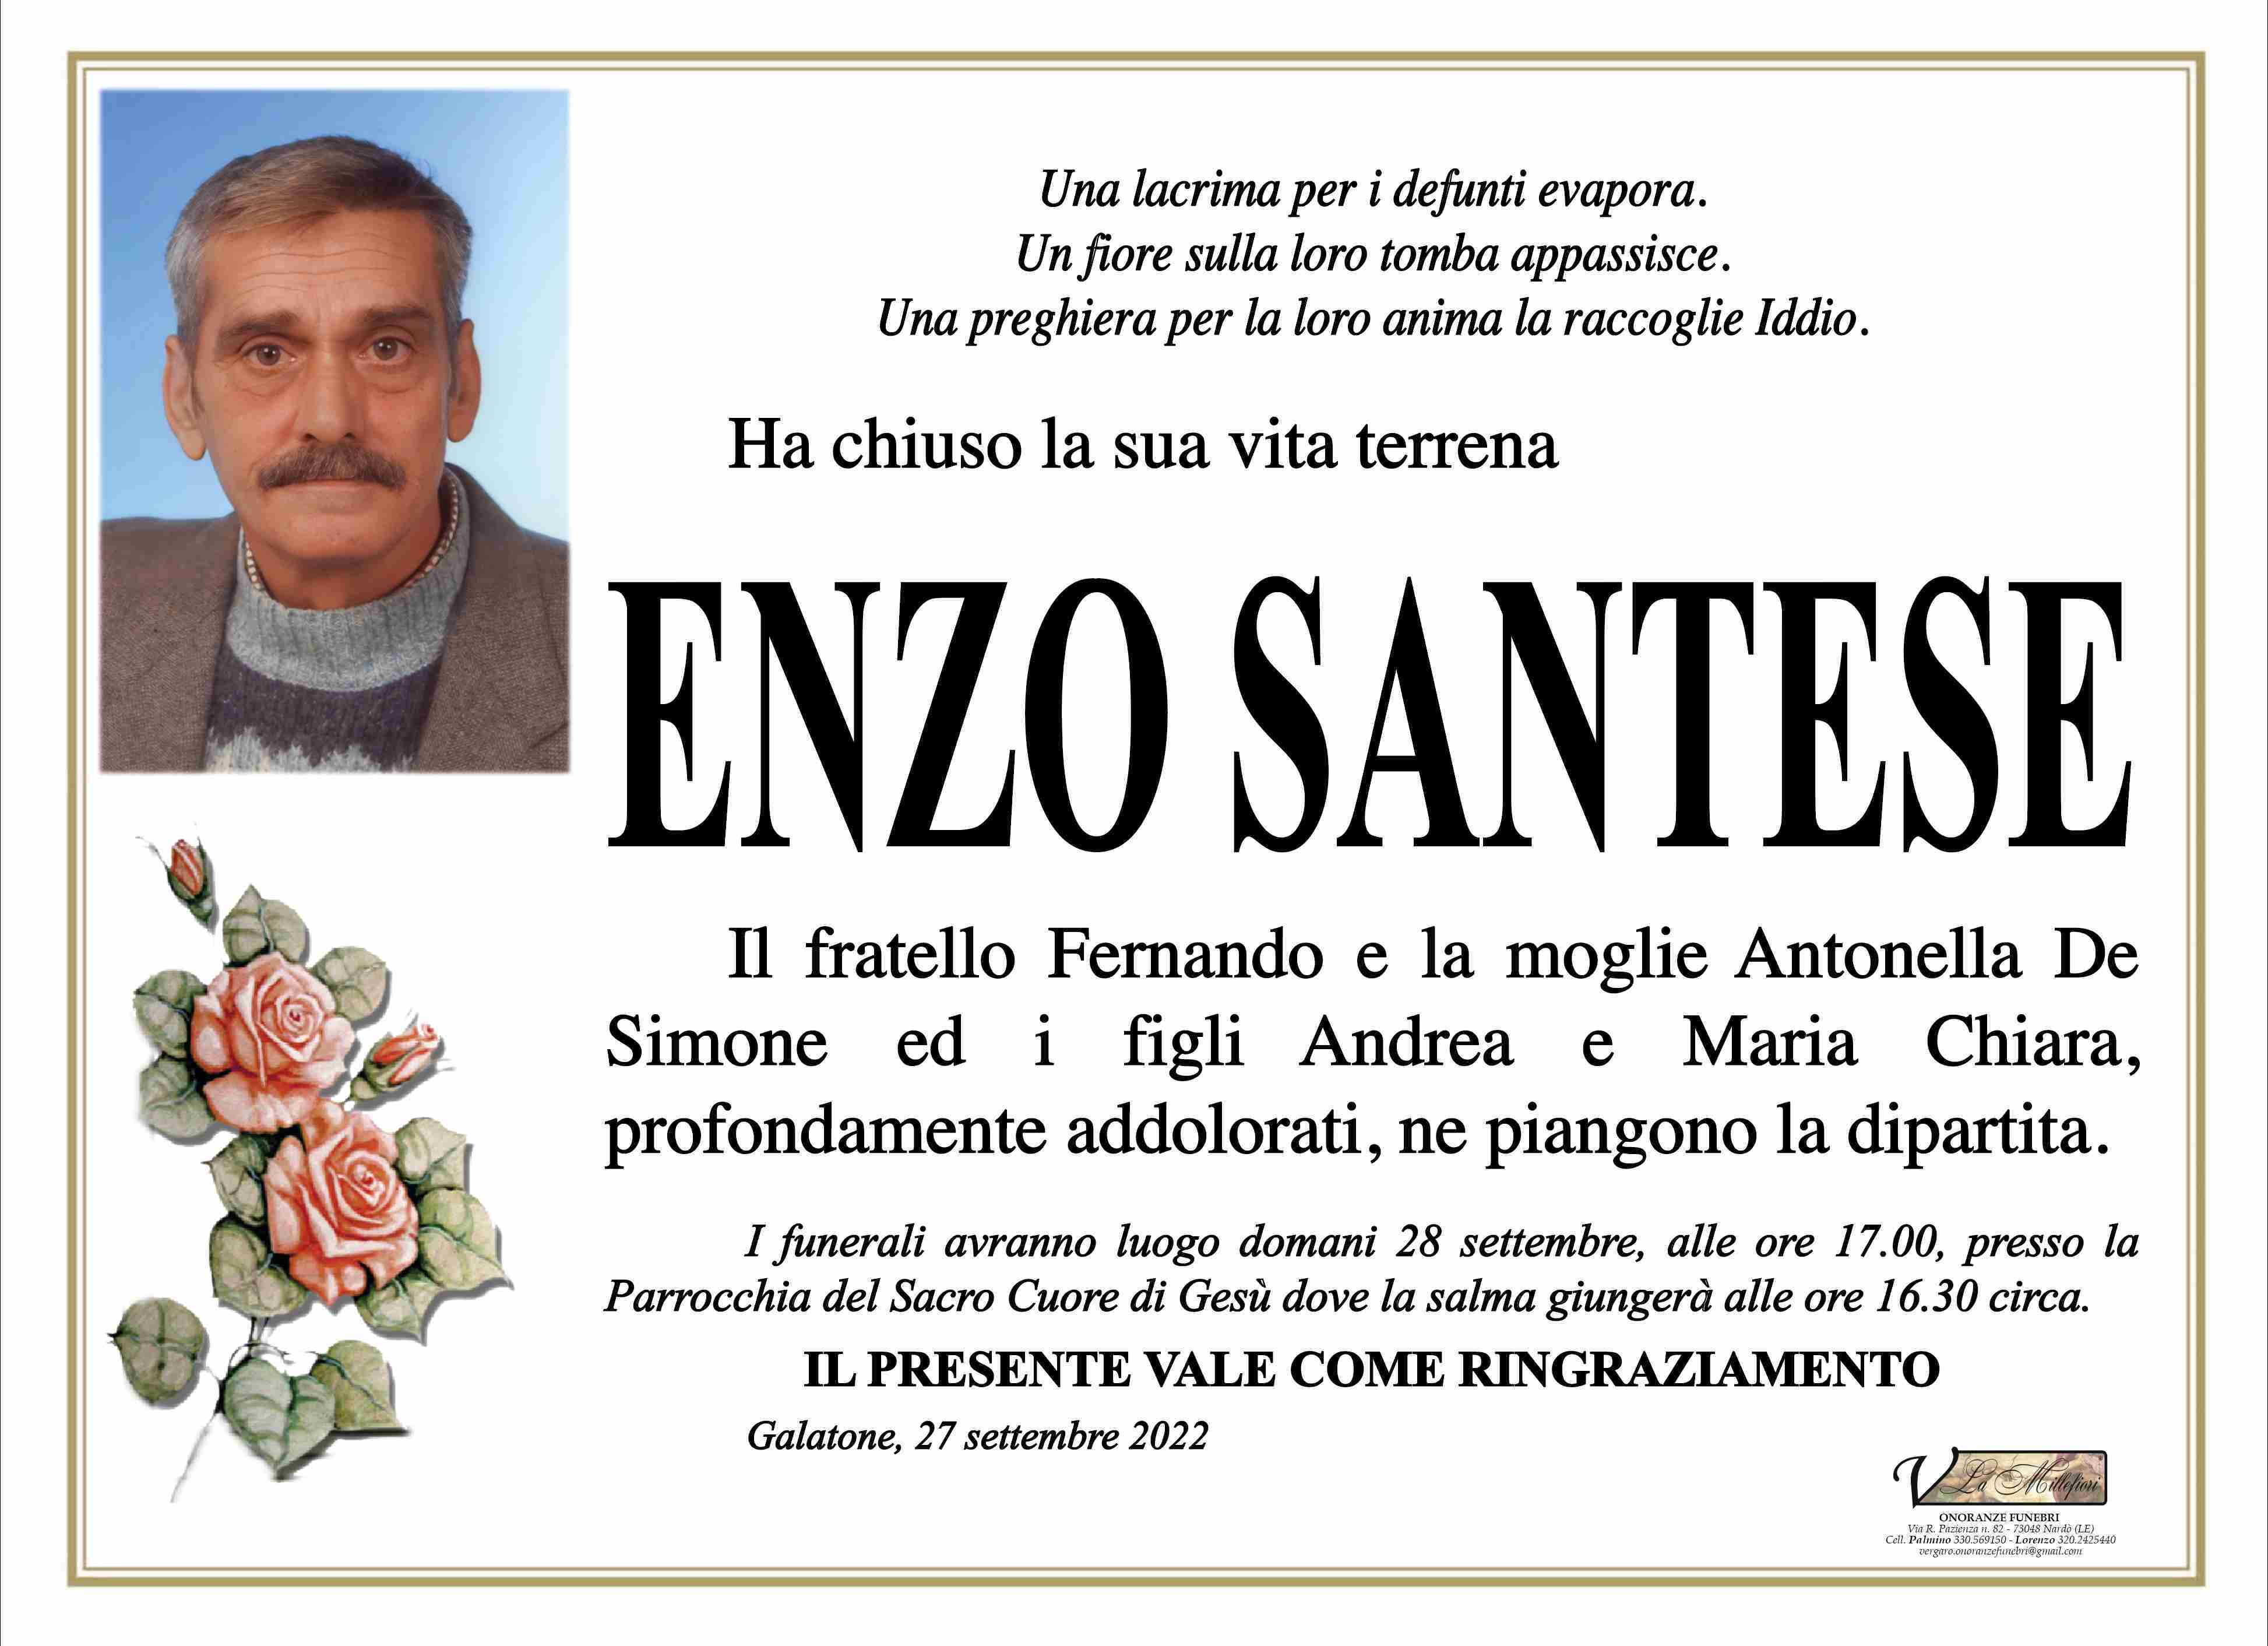 Enzo Santese